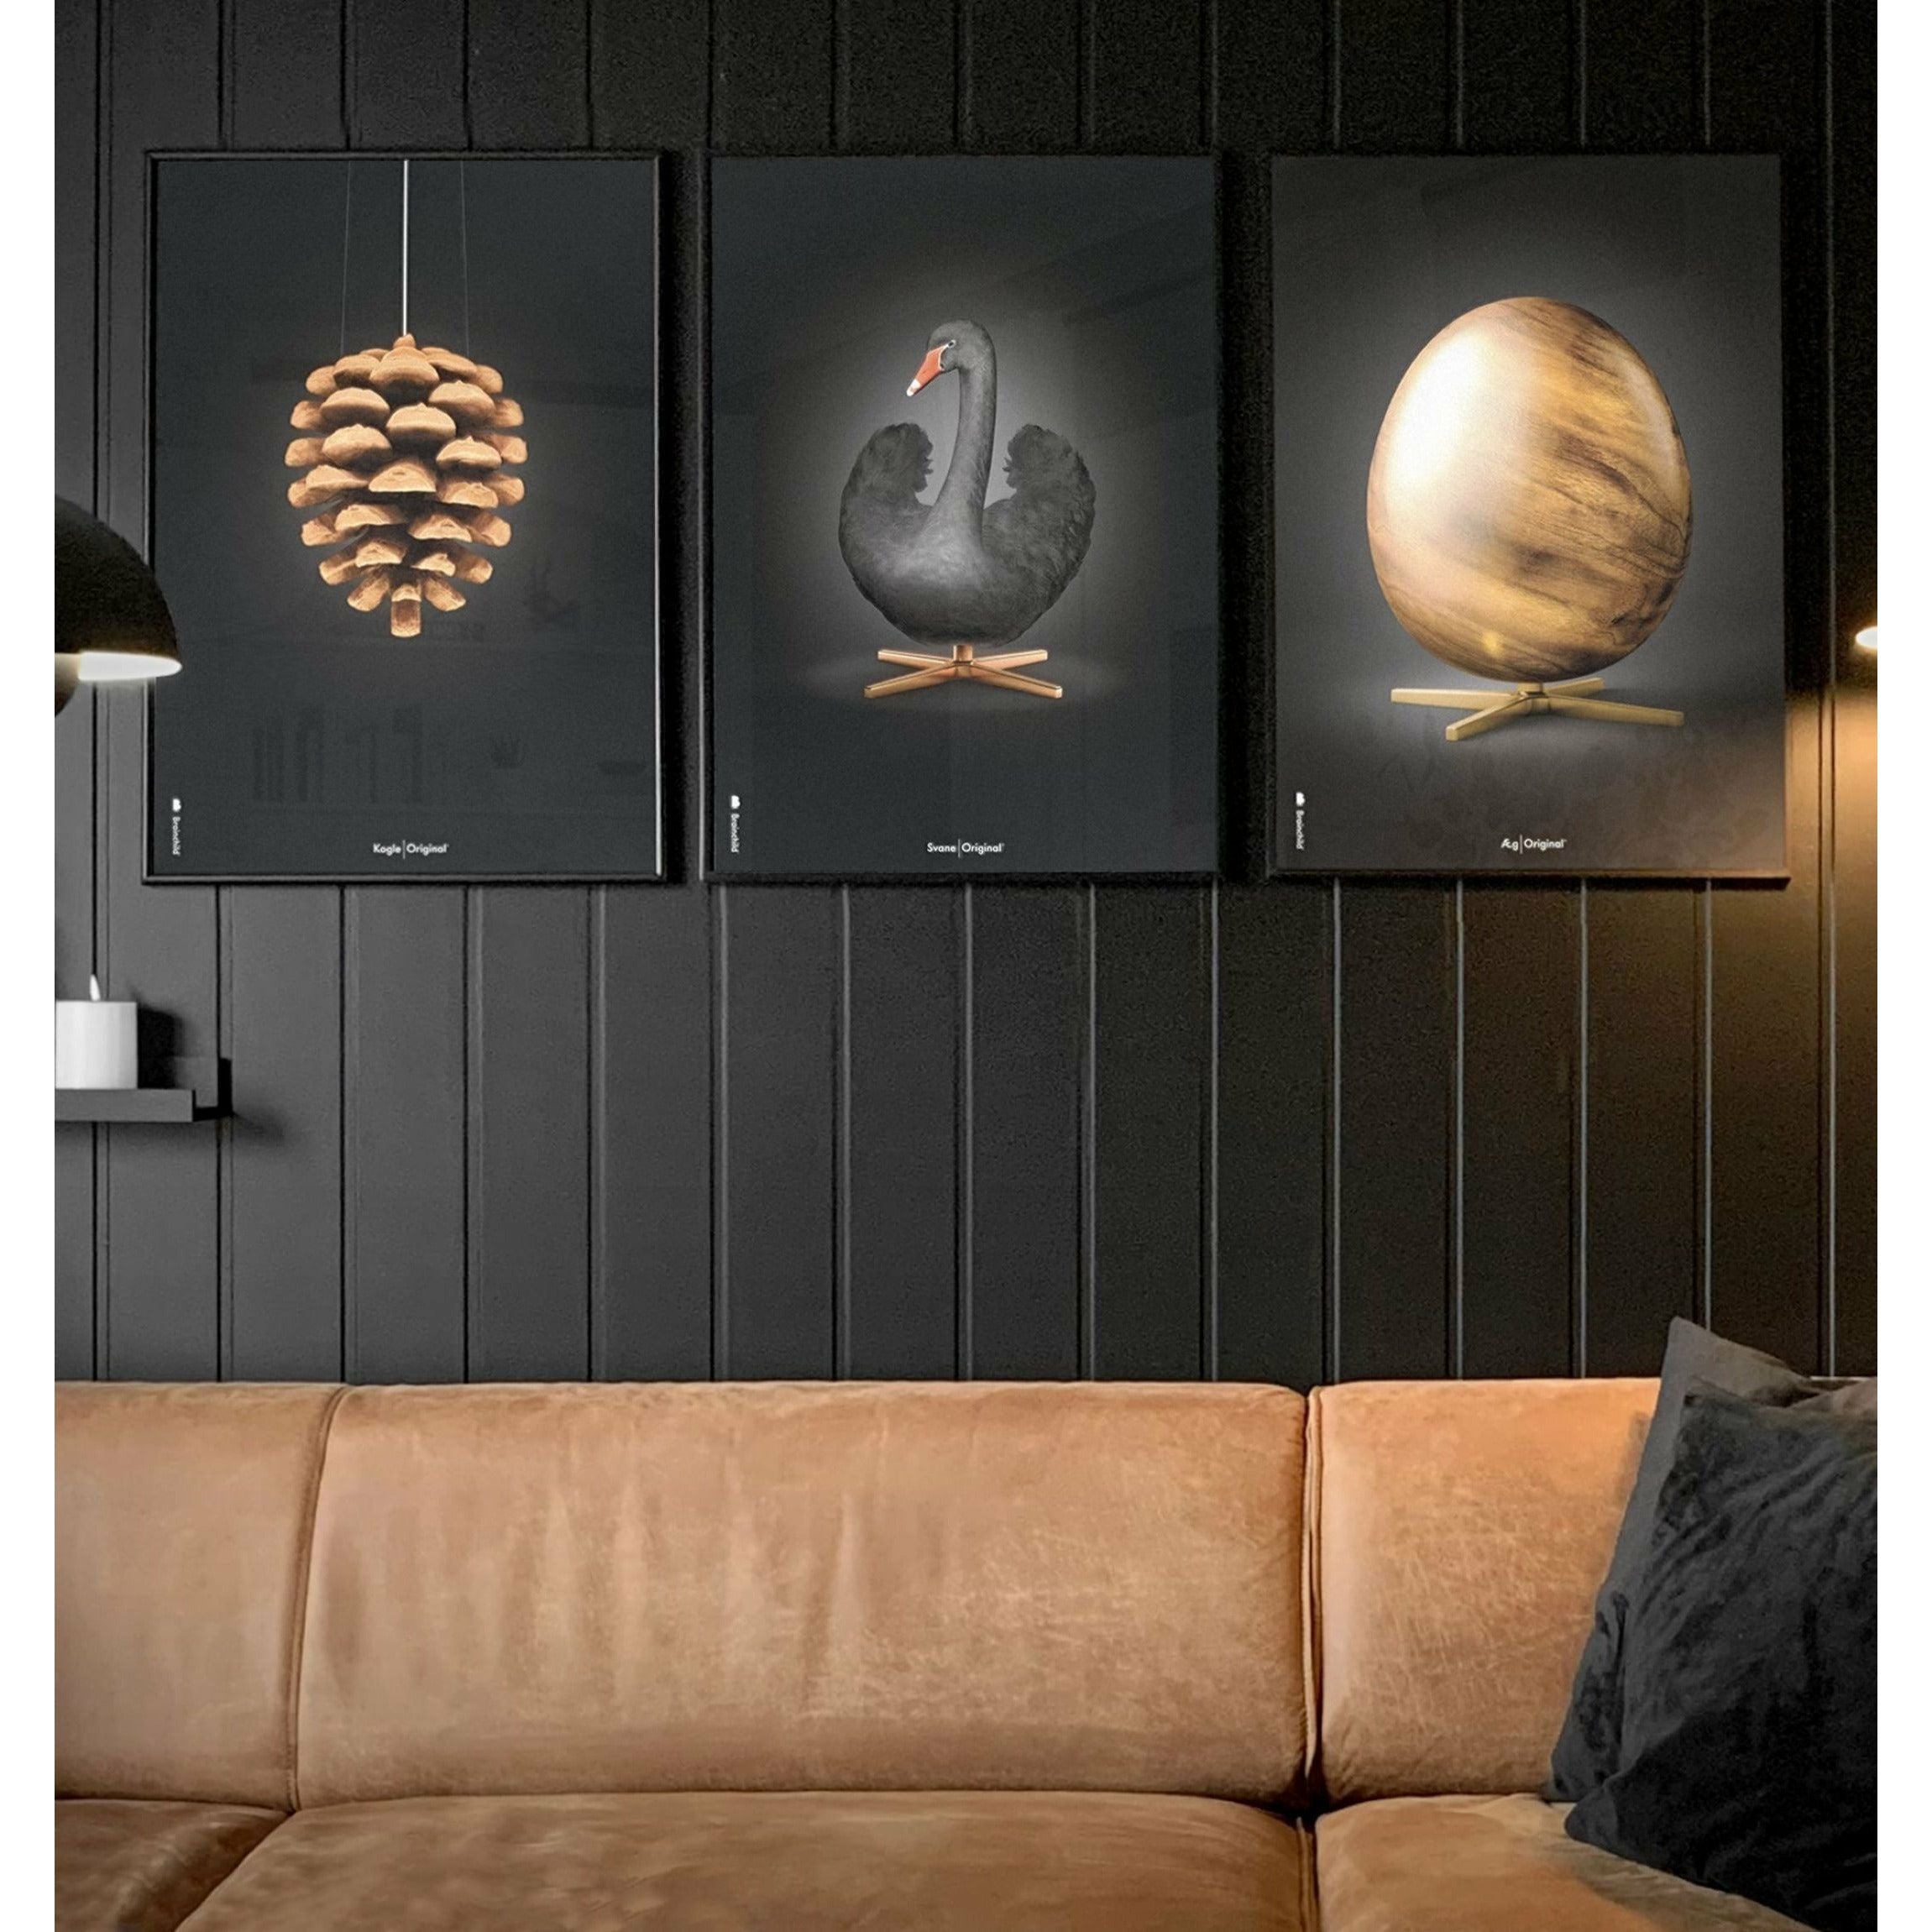 brainchild Swan Classic Poster, koperen frame 30x40 cm, zwarte/zwarte achtergrond